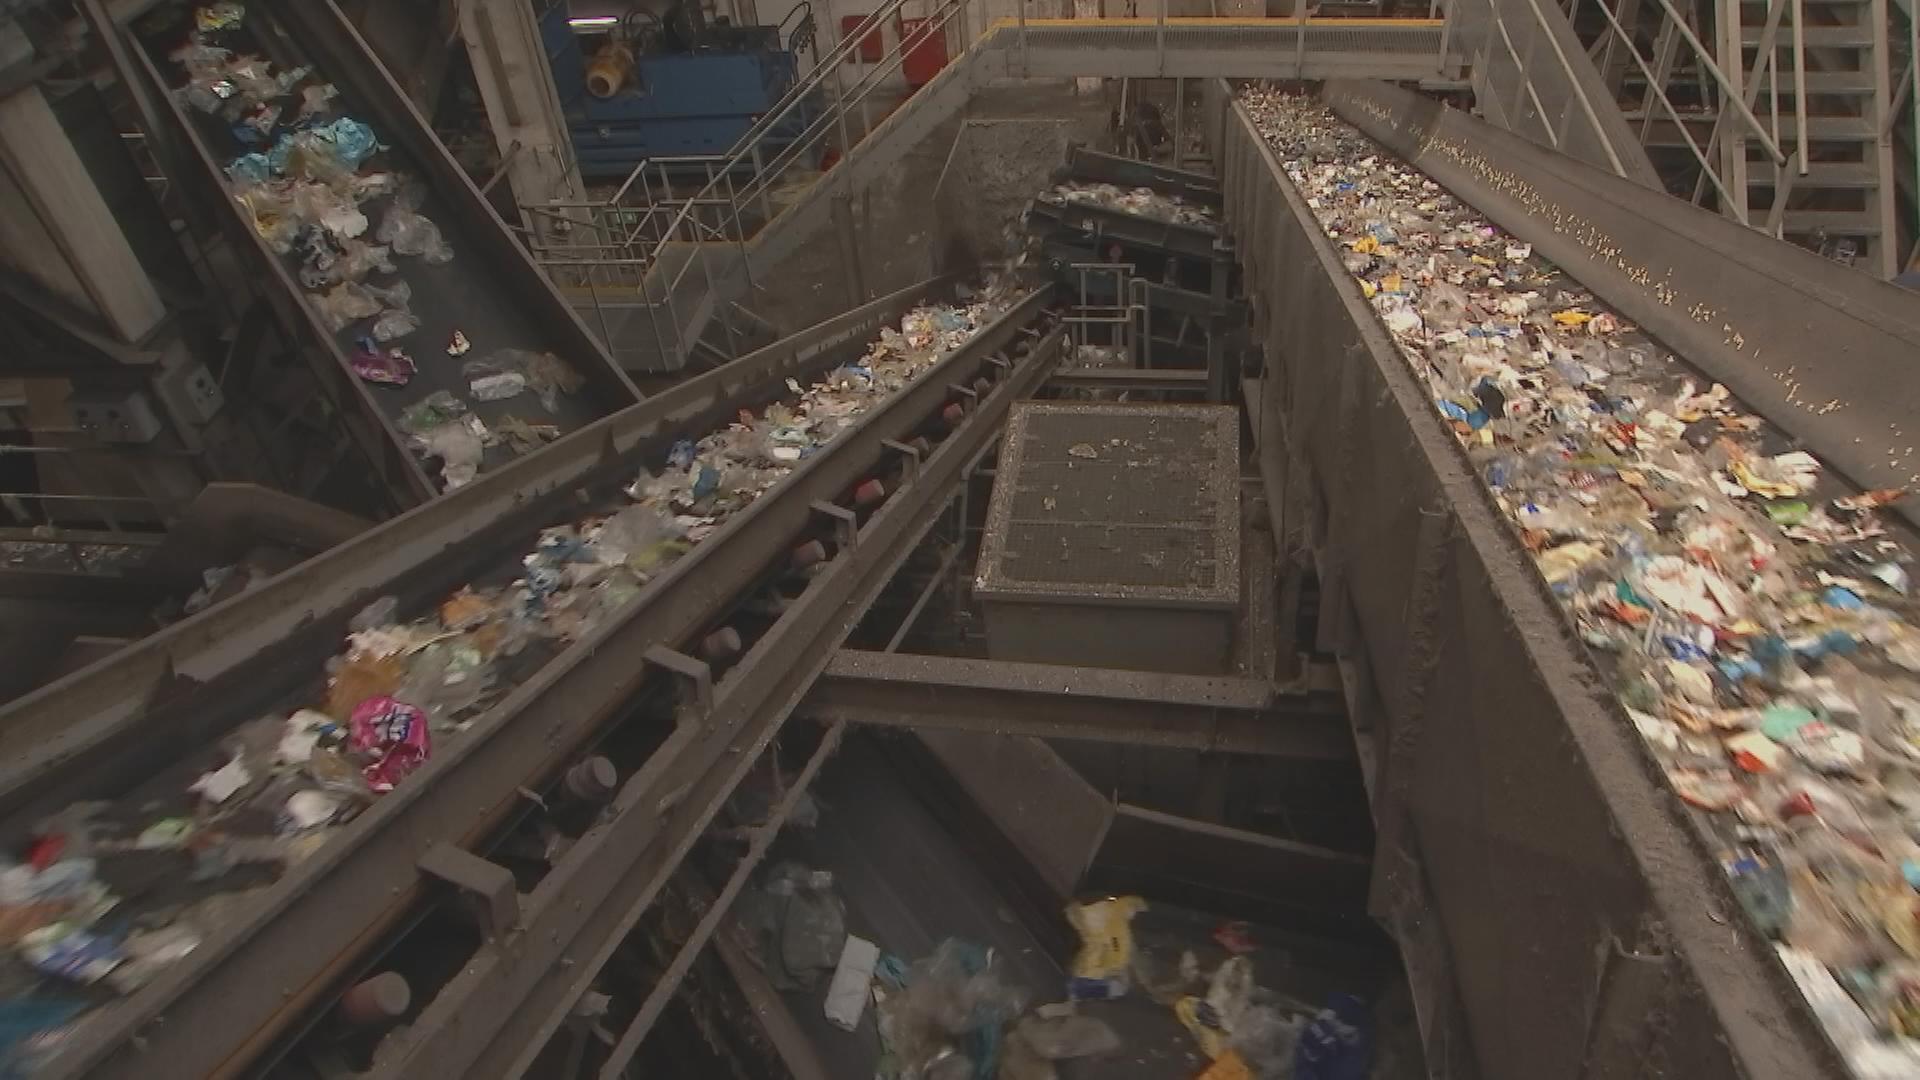 Plastik bei der Müllverarbeitung